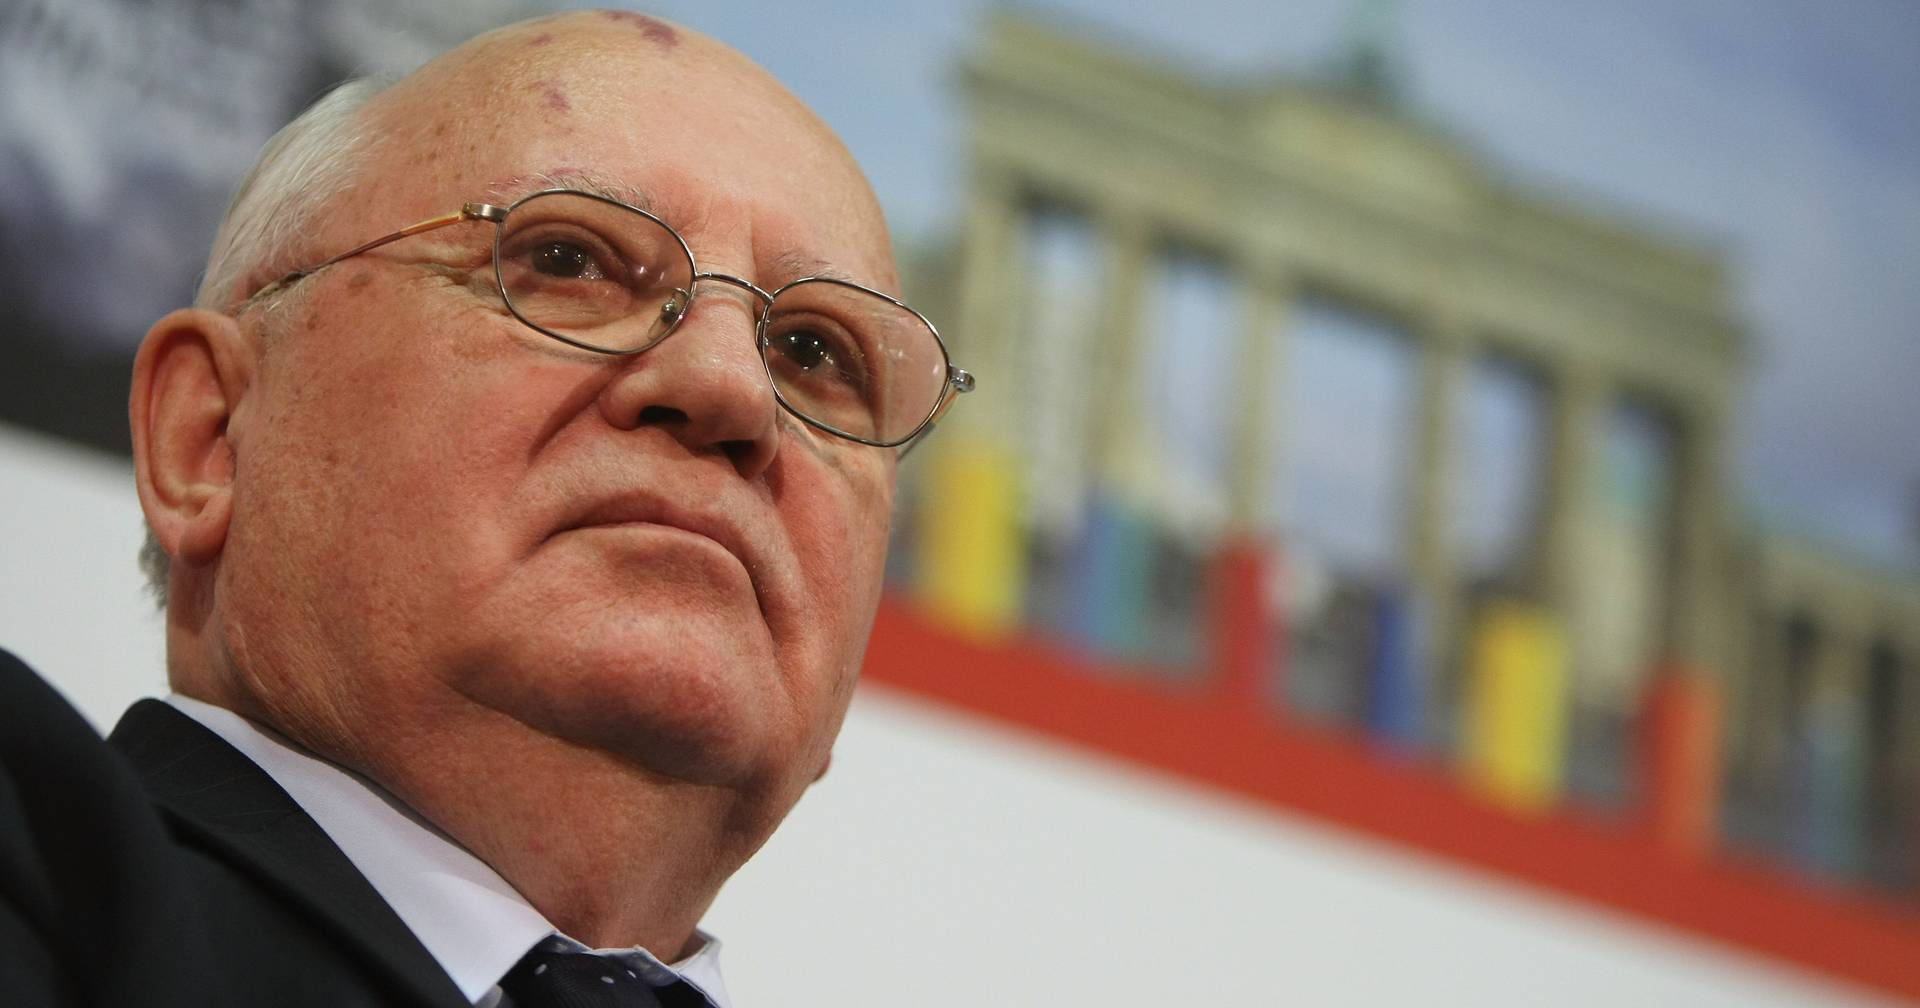 Morreu Mikhail Gorbachev, o homem que descongelou a História. Tinha 91 anos